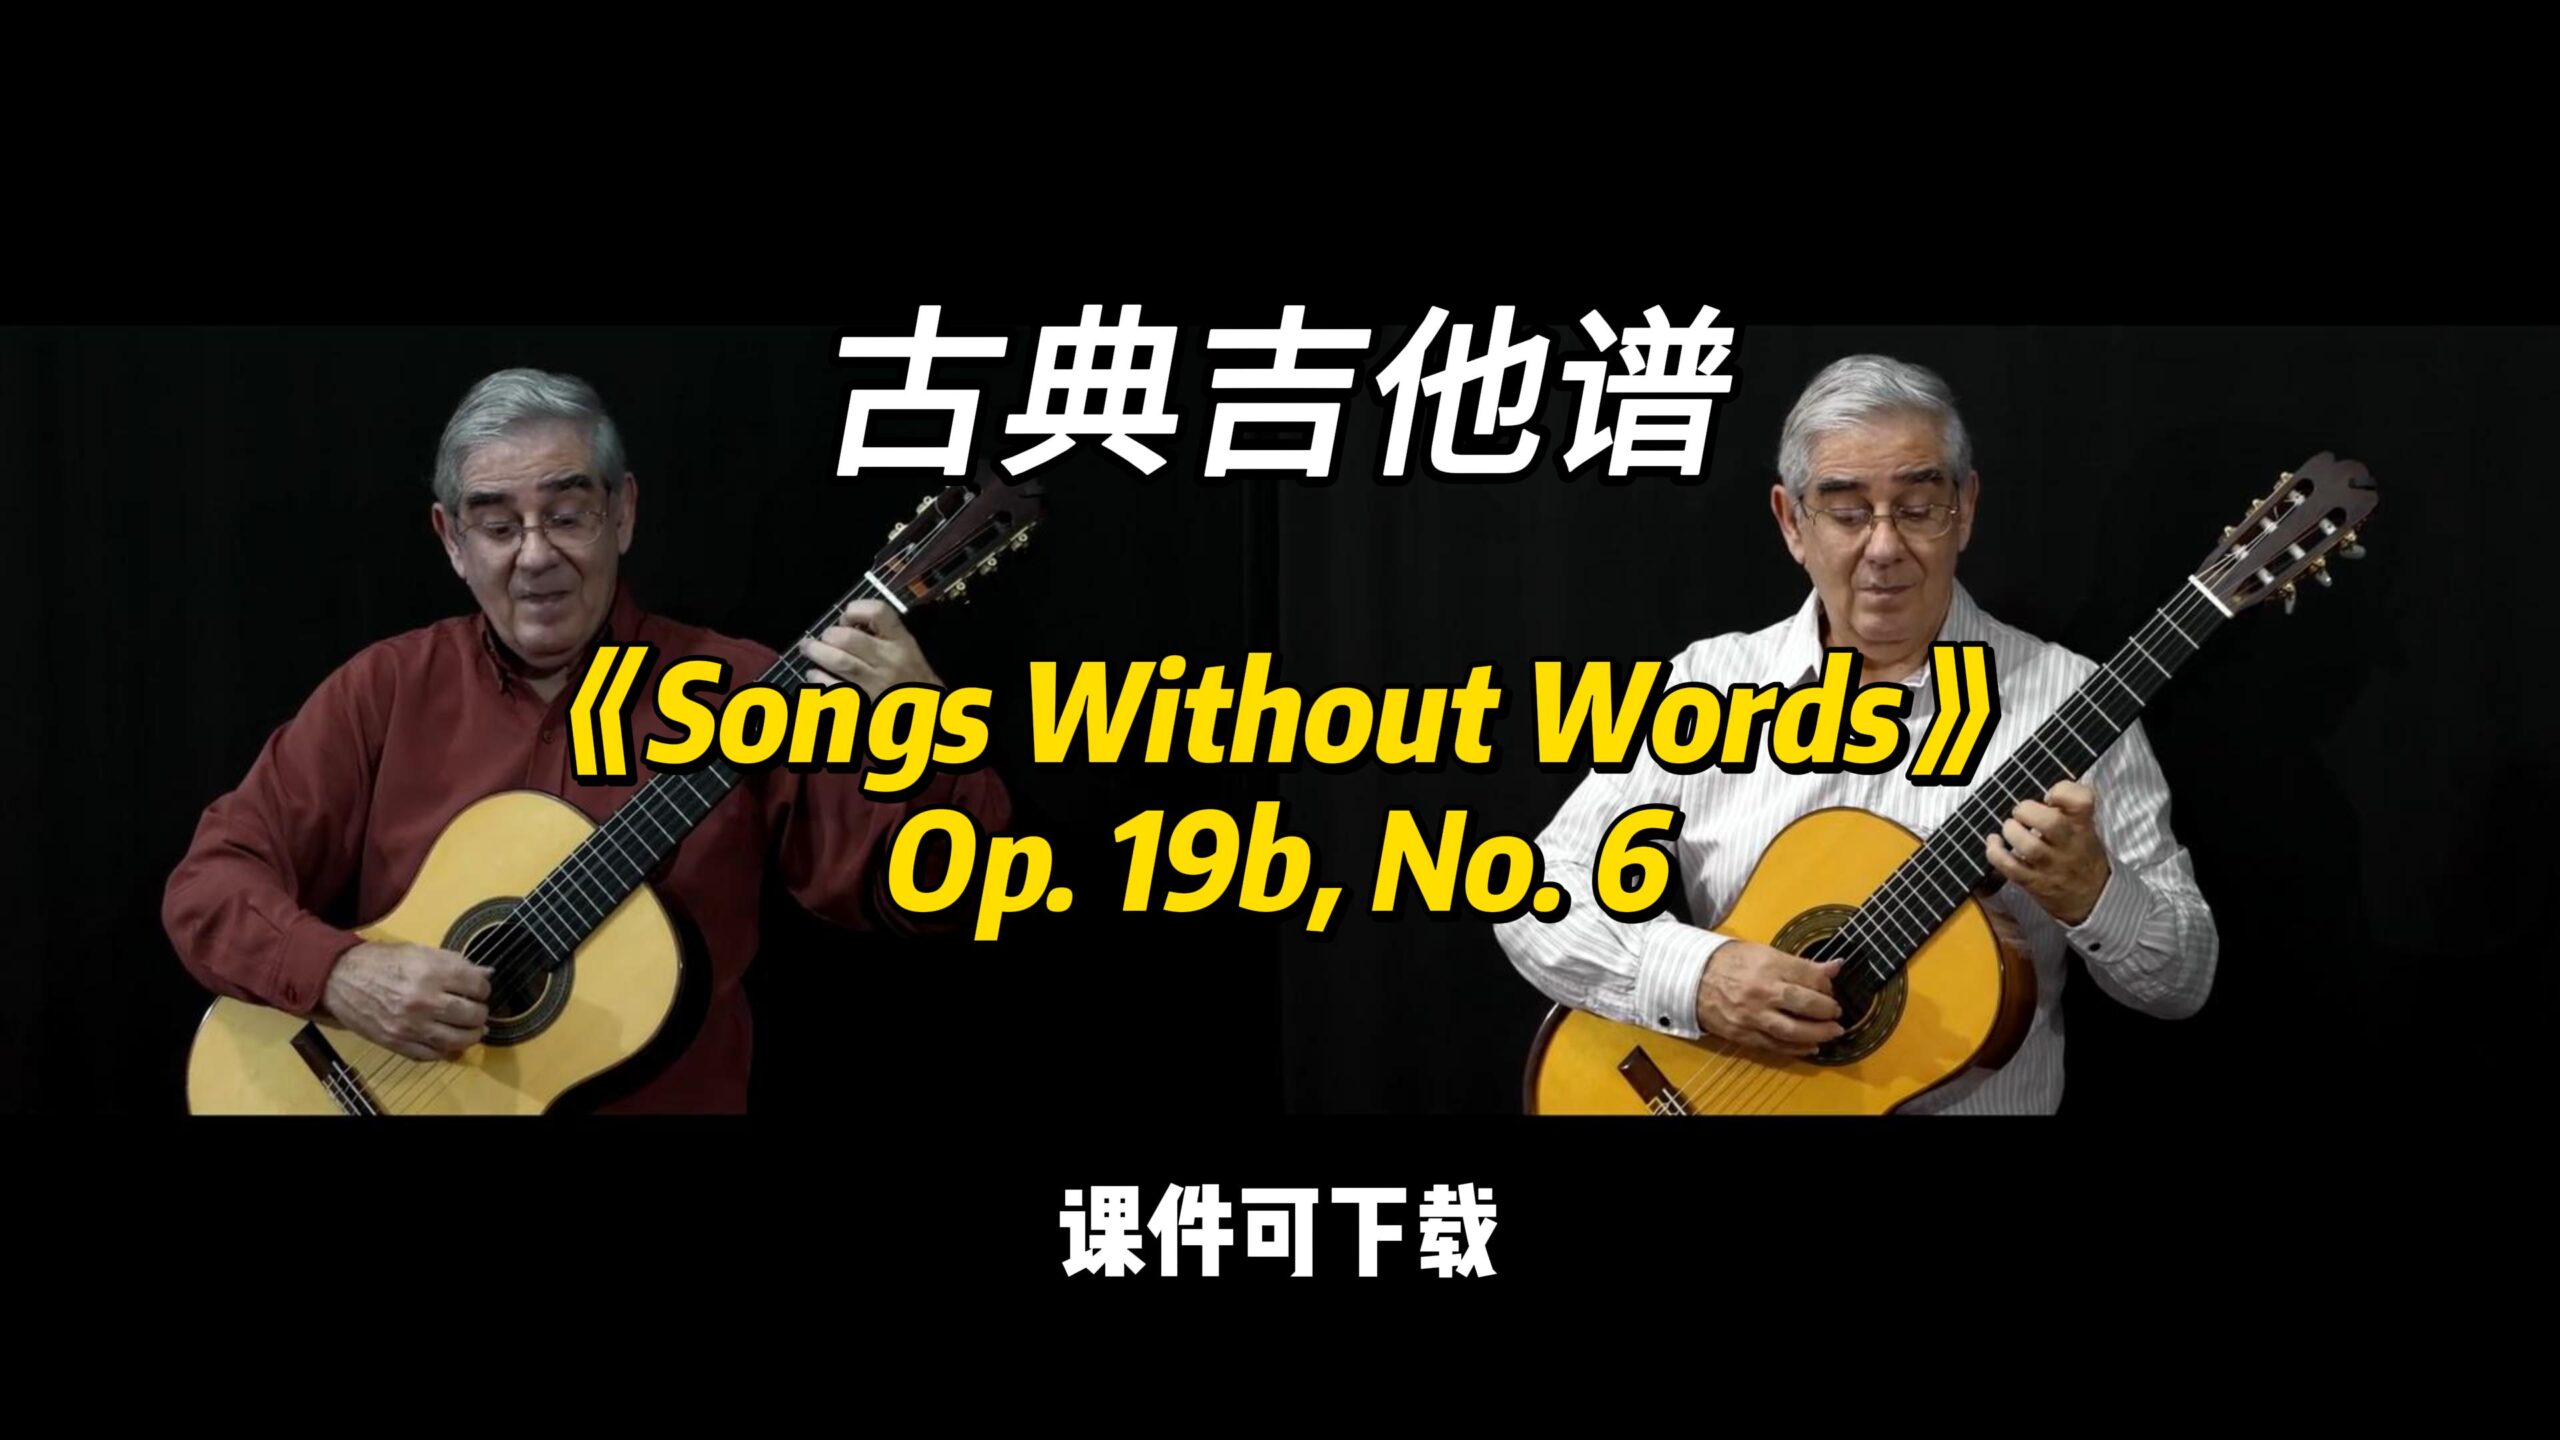 【古典吉他】《Songs Without Words》Op. 19b, No. 6（乐谱可下载）-古桐博客